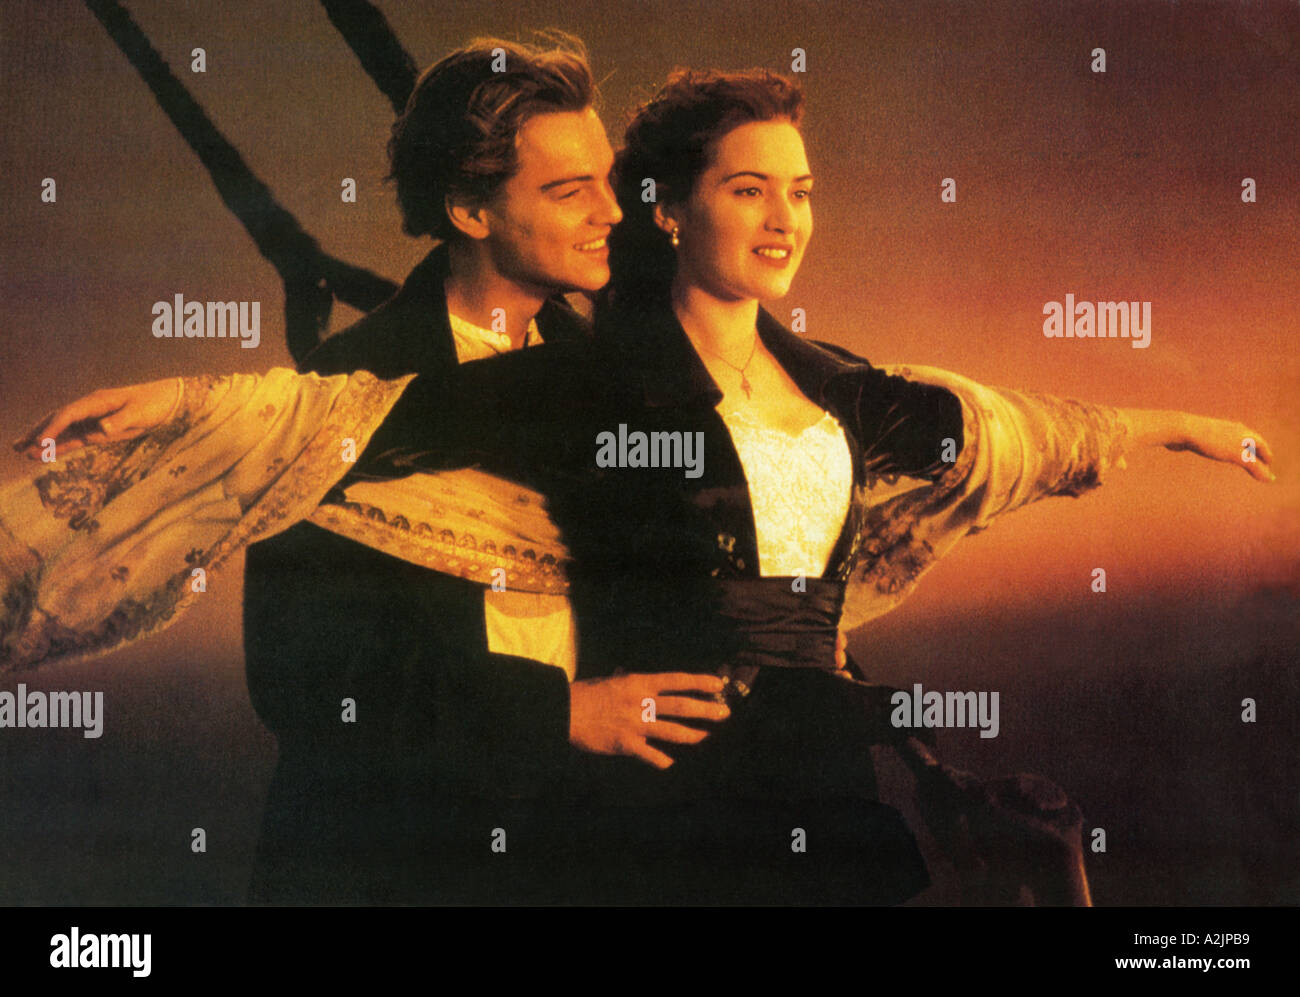 Oscar gagnant 1997 TITANIC film avec Leonardo DiCaprio et Kate Winslet Banque D'Images